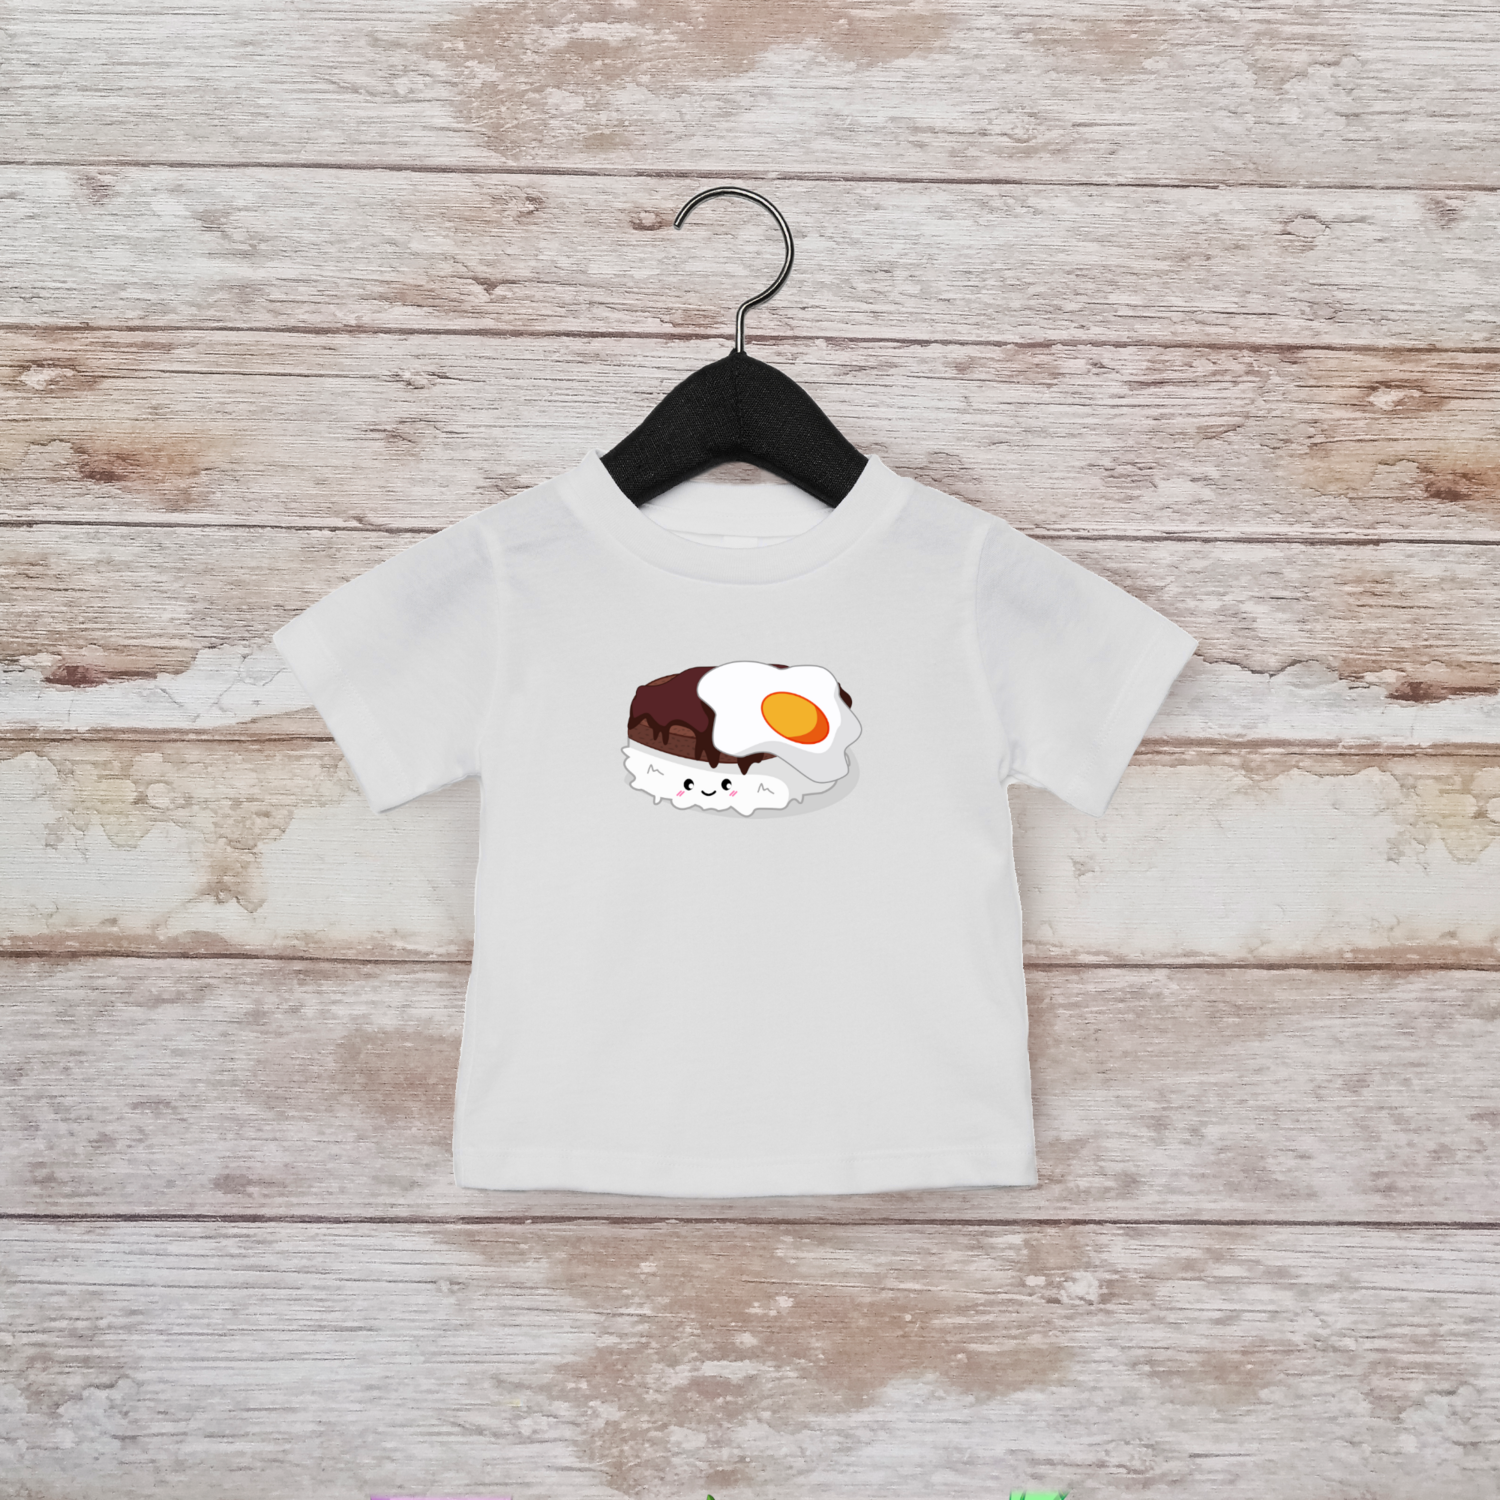 Loco Moco Toddler Shirt